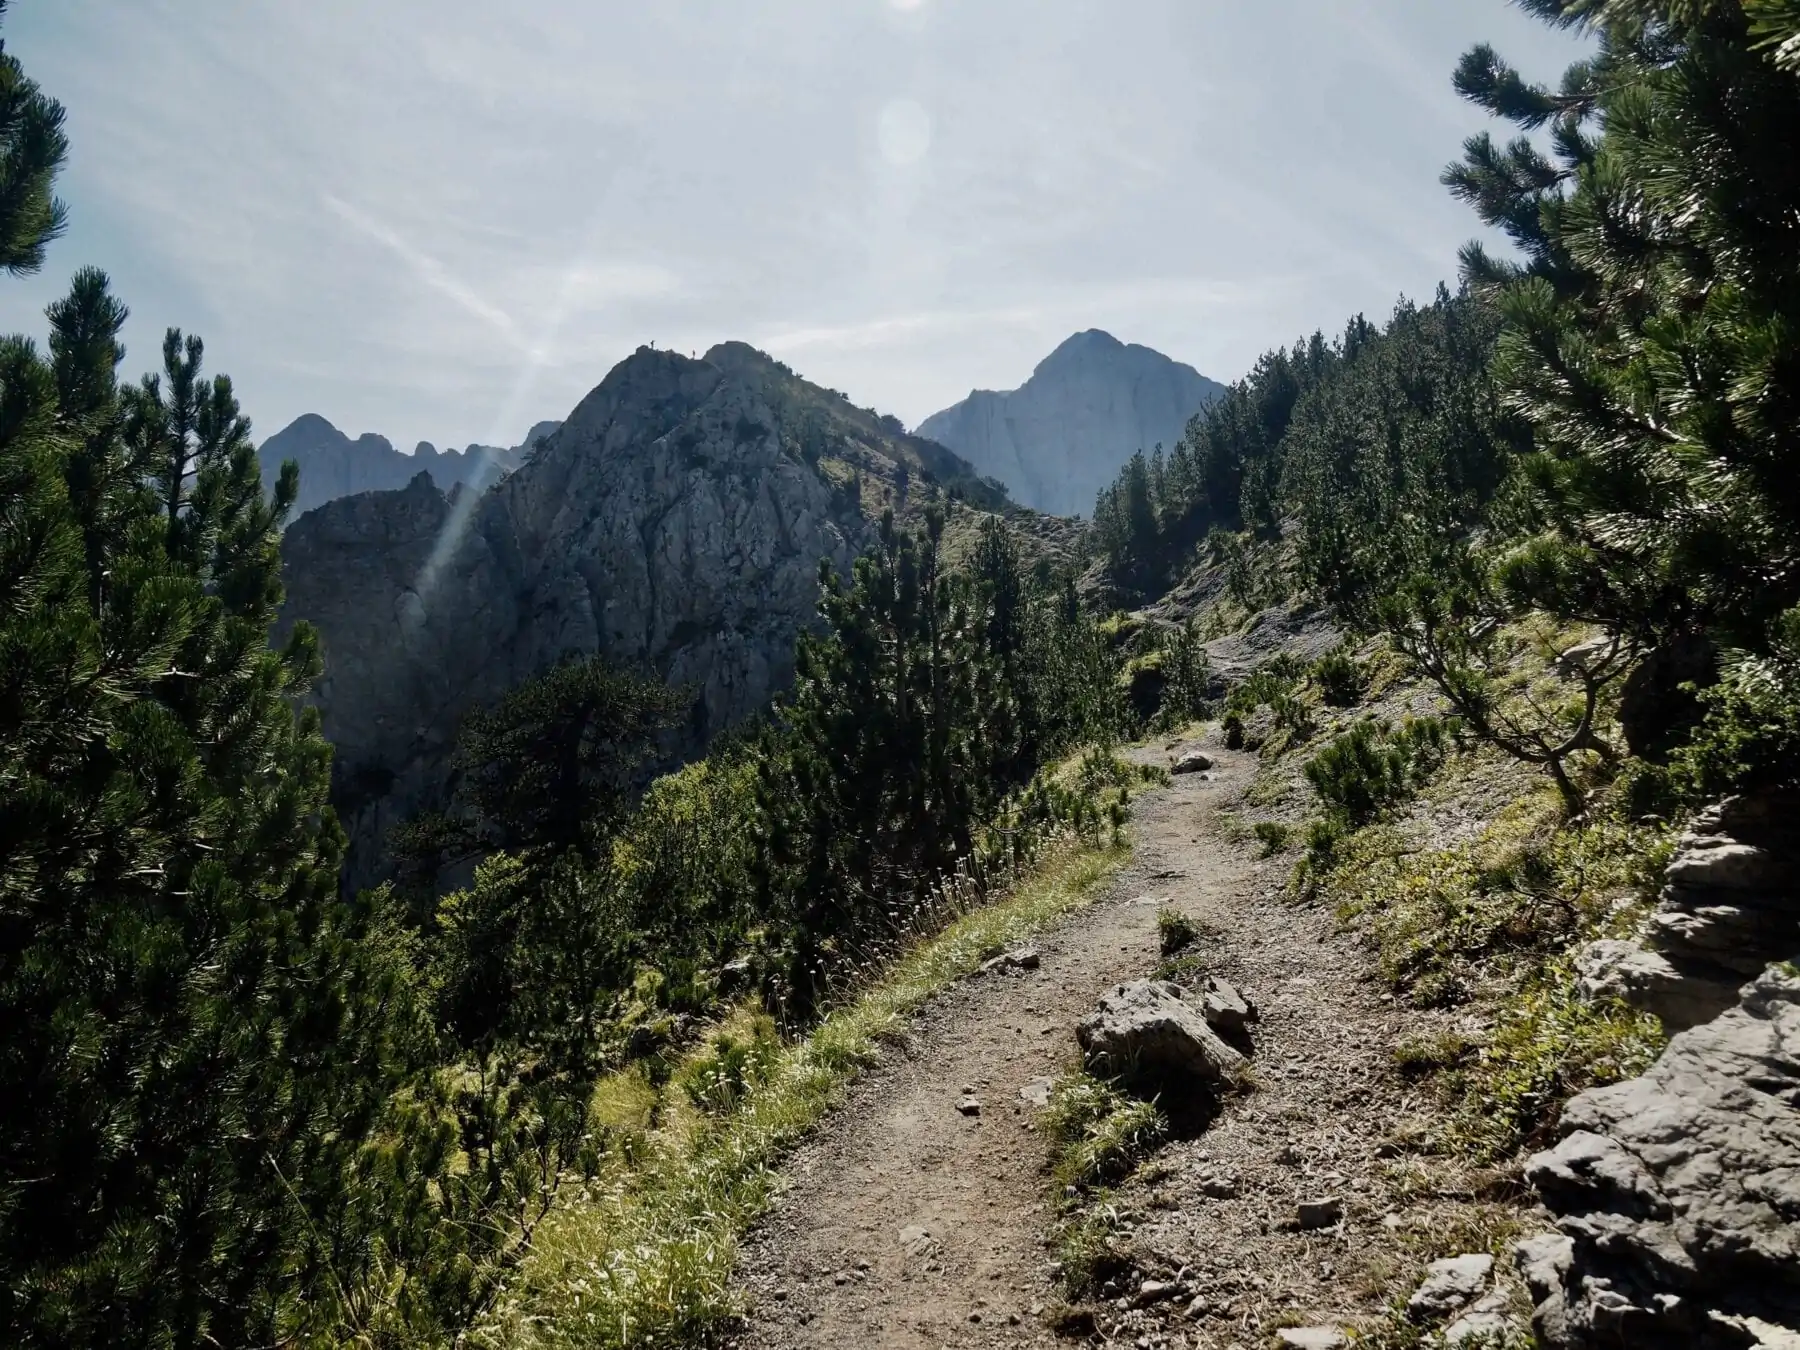 Balkan Trail - Peaks of the Balkan